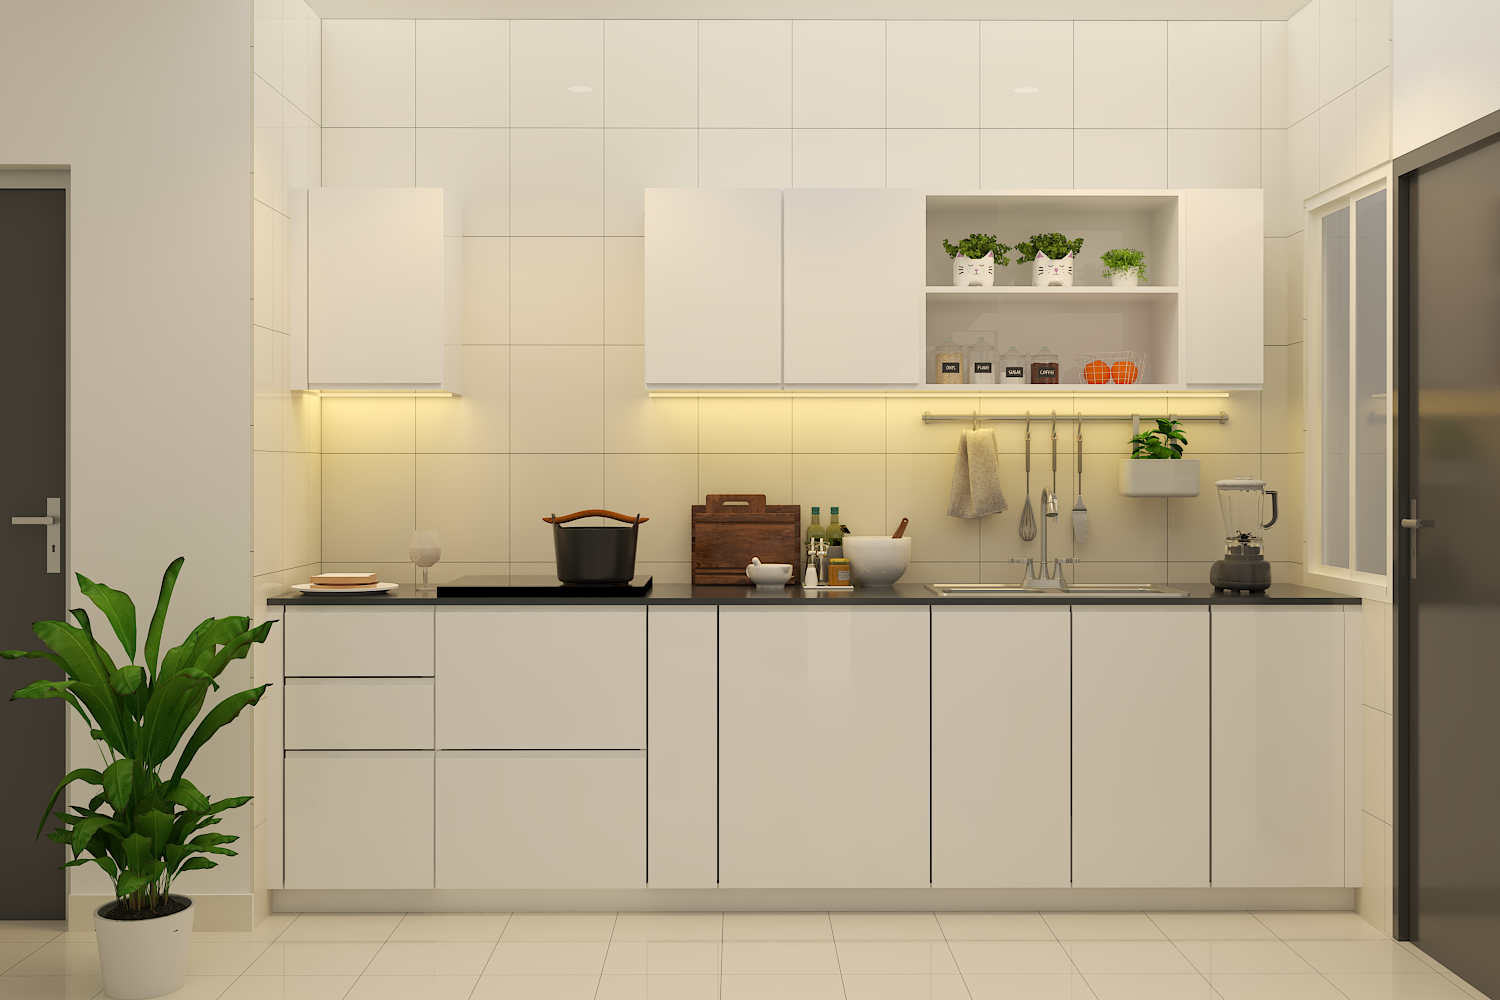 Minimalist Straight Kitchen Design With White Cabinets